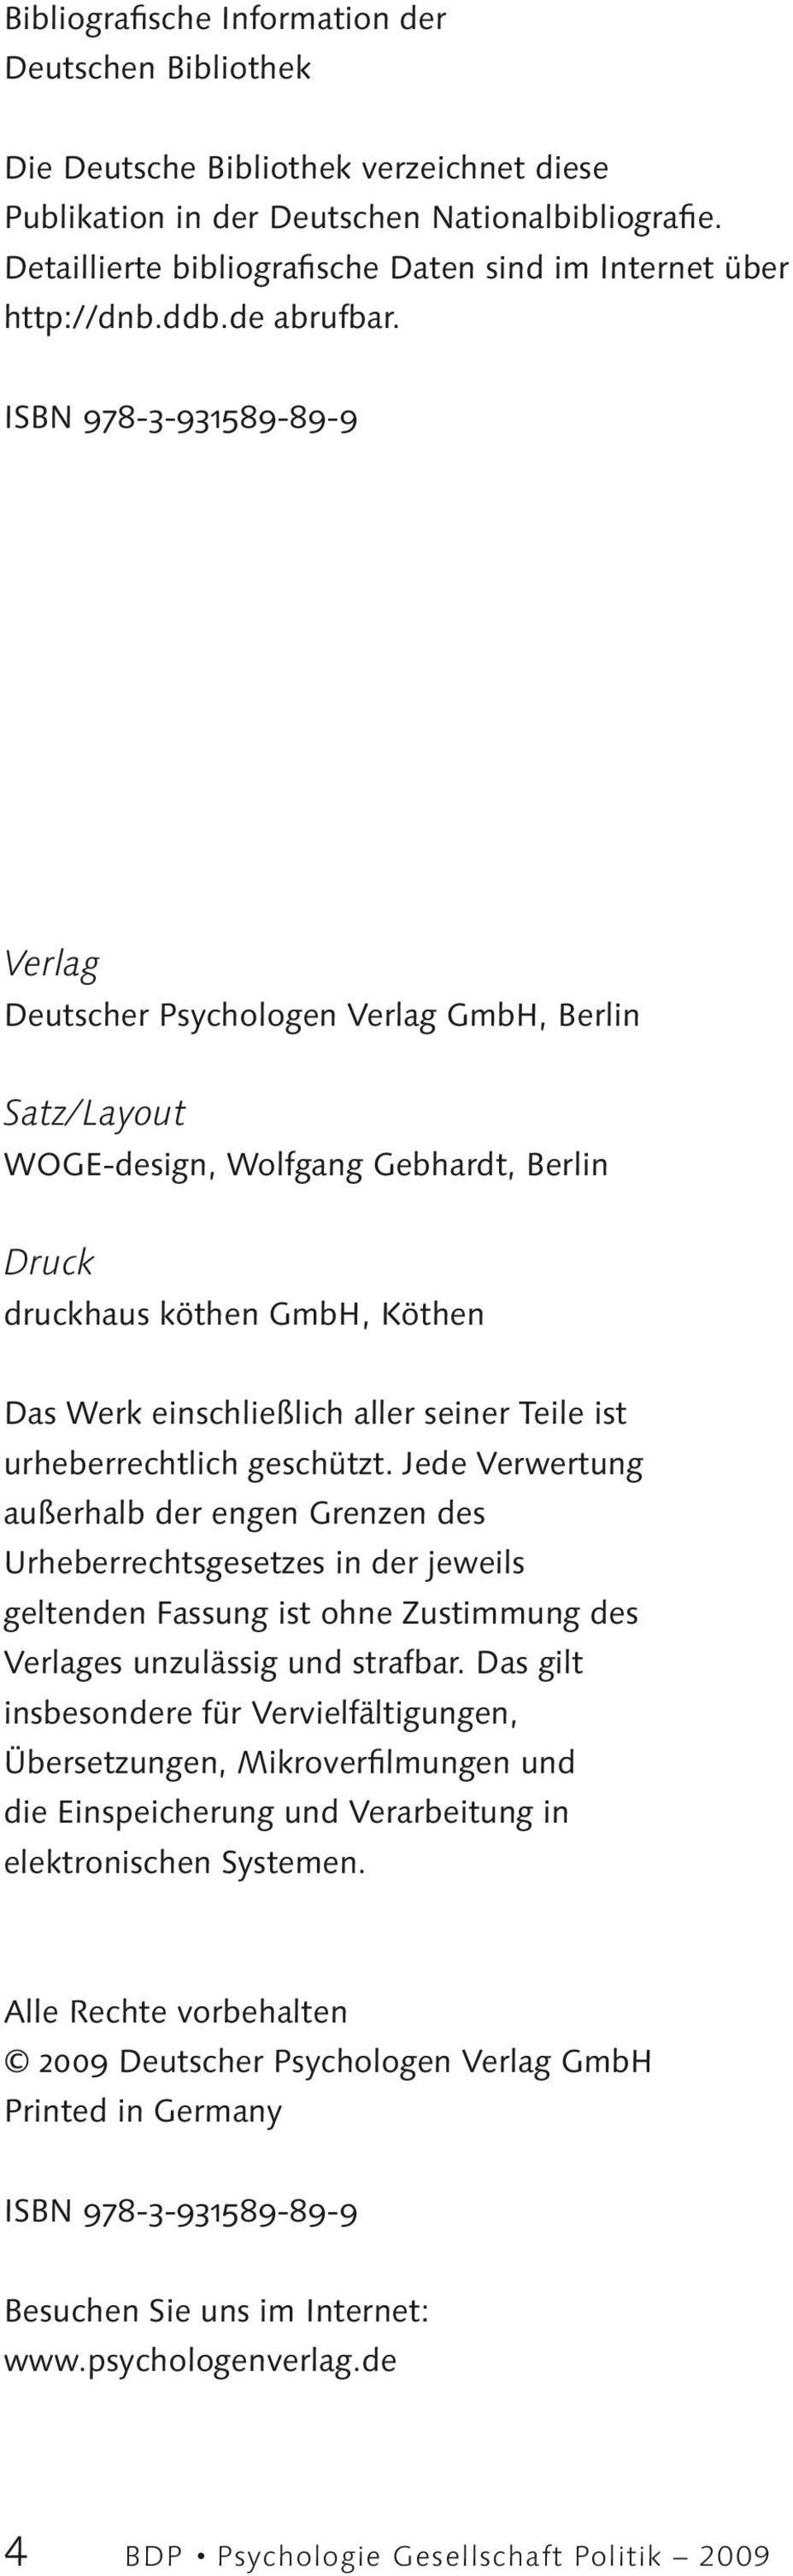 ISBN 978-3-931589-89-9 Verlag Deutscher Psychologen Verlag GmbH, Berlin Satz/Layout WOGE-design, Wolfgang Gebhardt, Berlin Druck druckhaus köthen GmbH, Köthen Das Werk einschließlich aller seiner